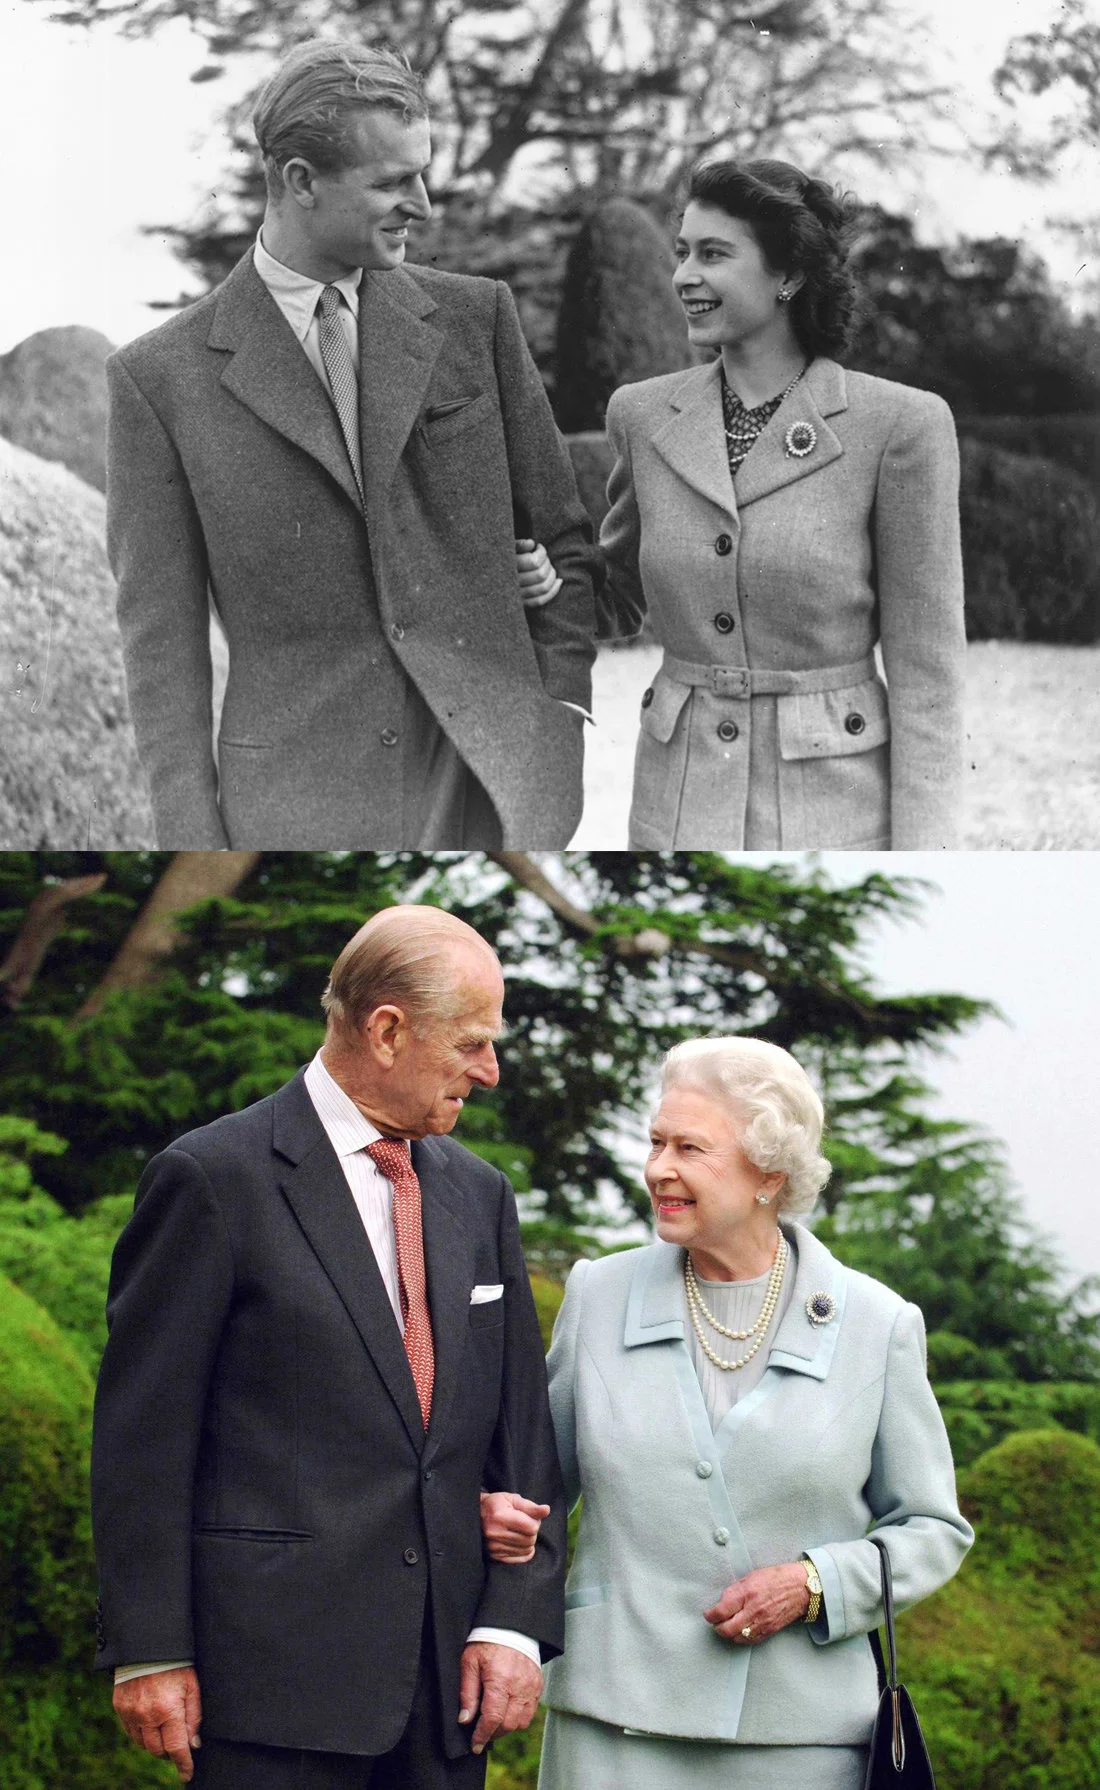 上图：1947年11月24日，伊丽莎白公主和菲利普在布罗德兰兹庄园度蜜月时携手散步。 下图：2007年，结婚60周年之际，英国女王伊丽莎白二世和菲利普亲王在同一位置拍了同样动作的照片。